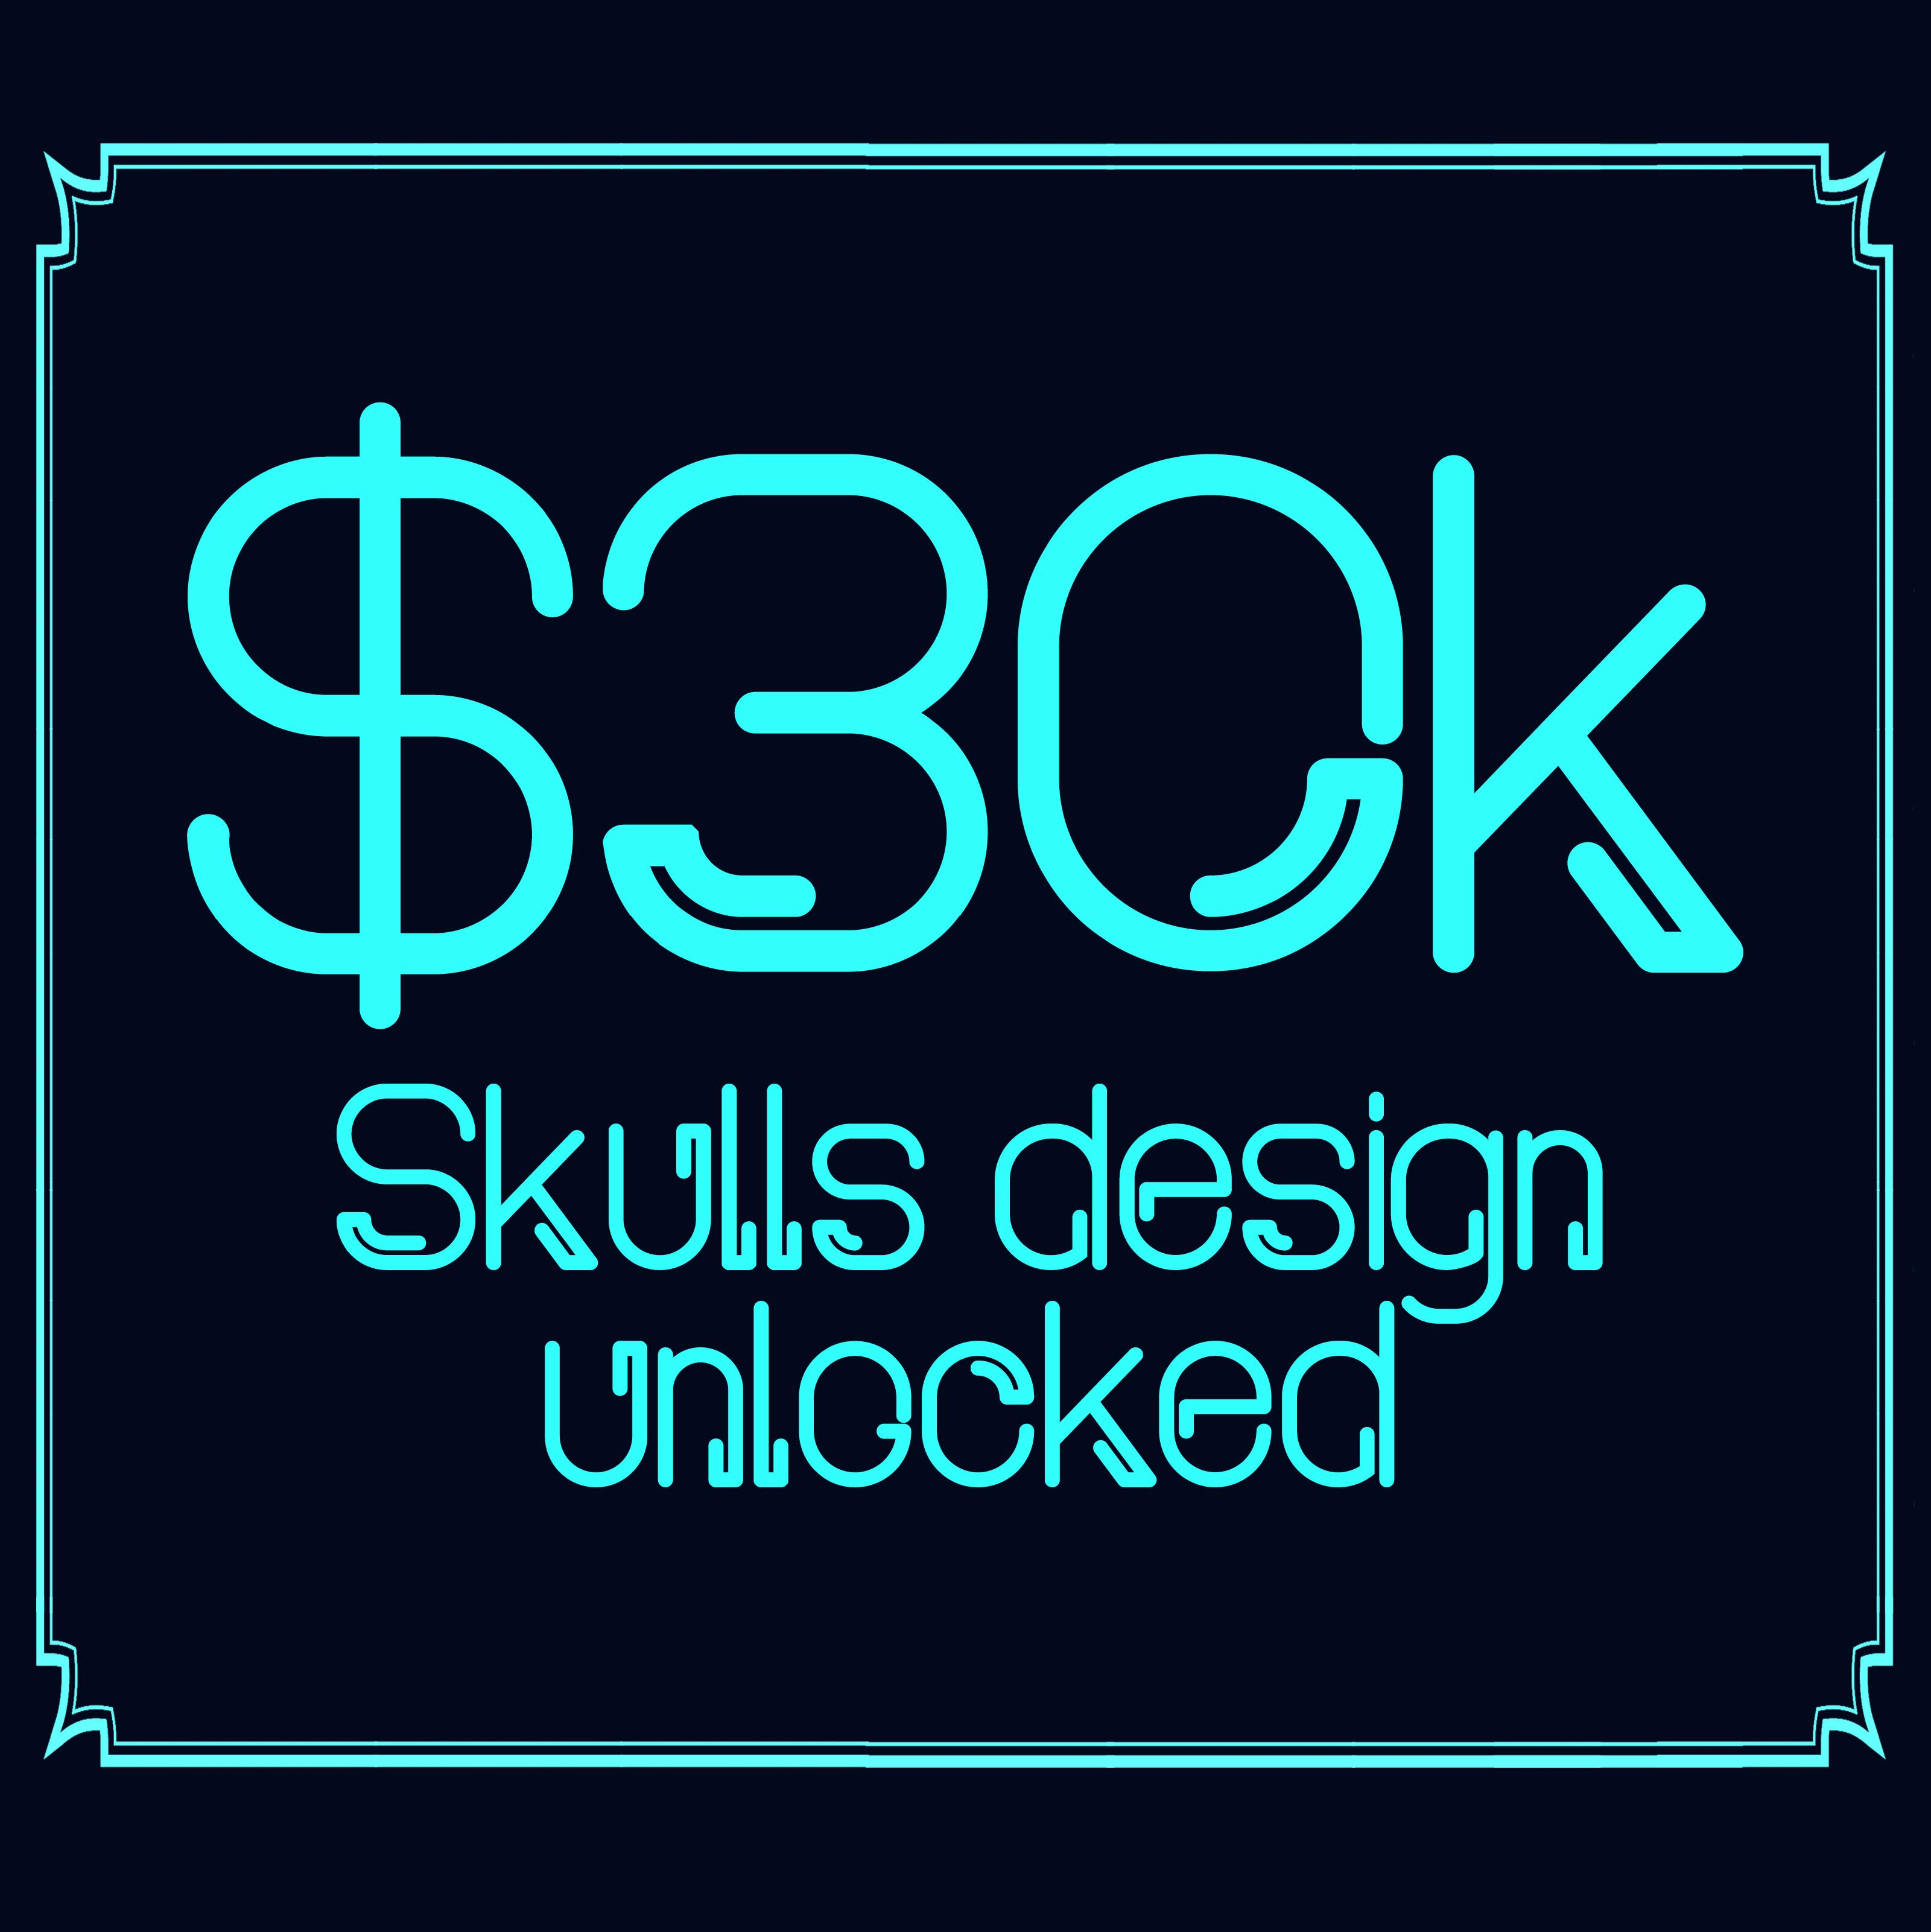 Skulls design unlocked